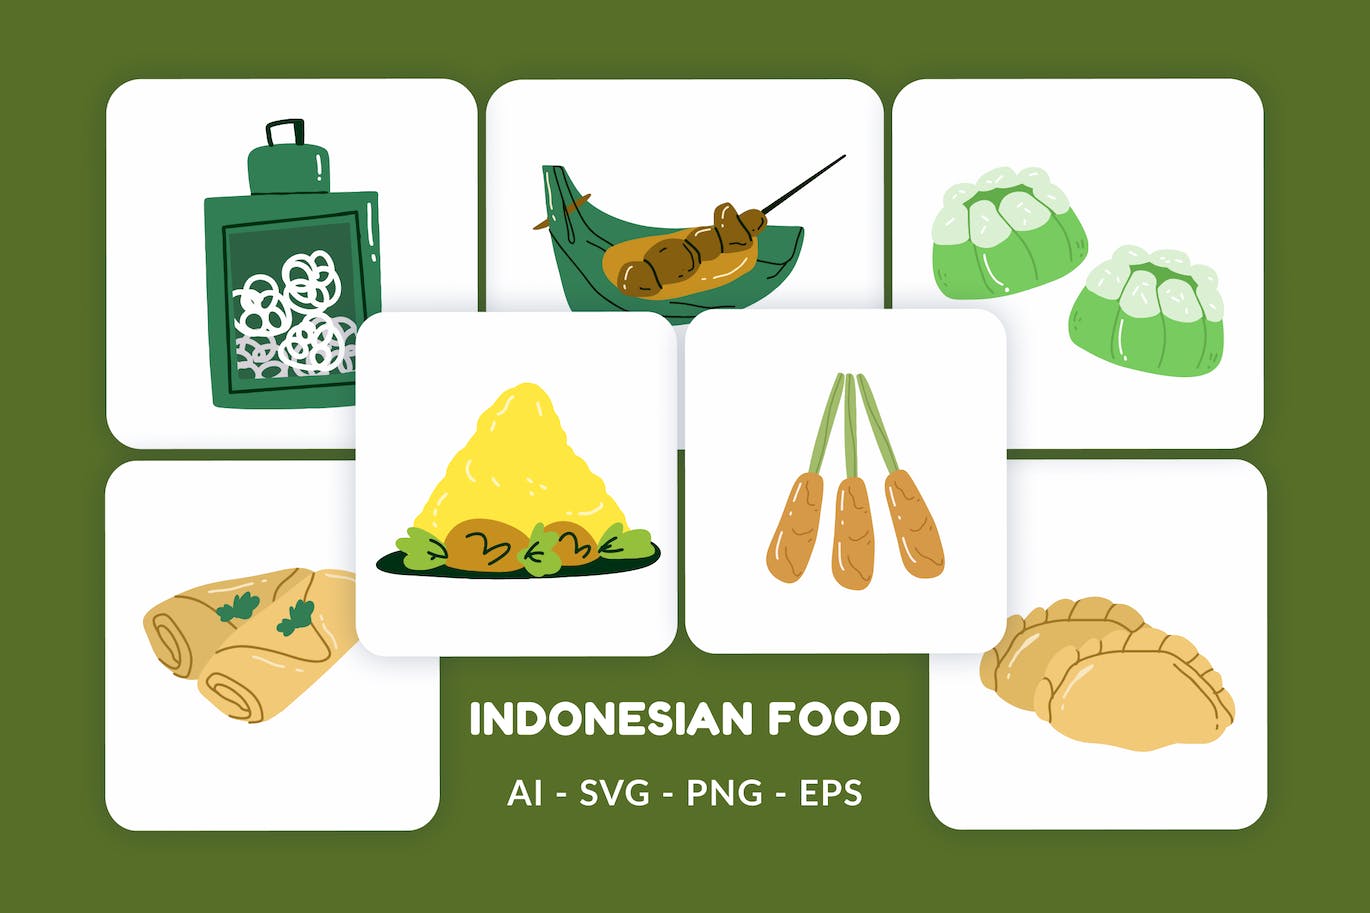 印尼食品矢量图形素材 Indonesian Food Vector Illustration v.4-1